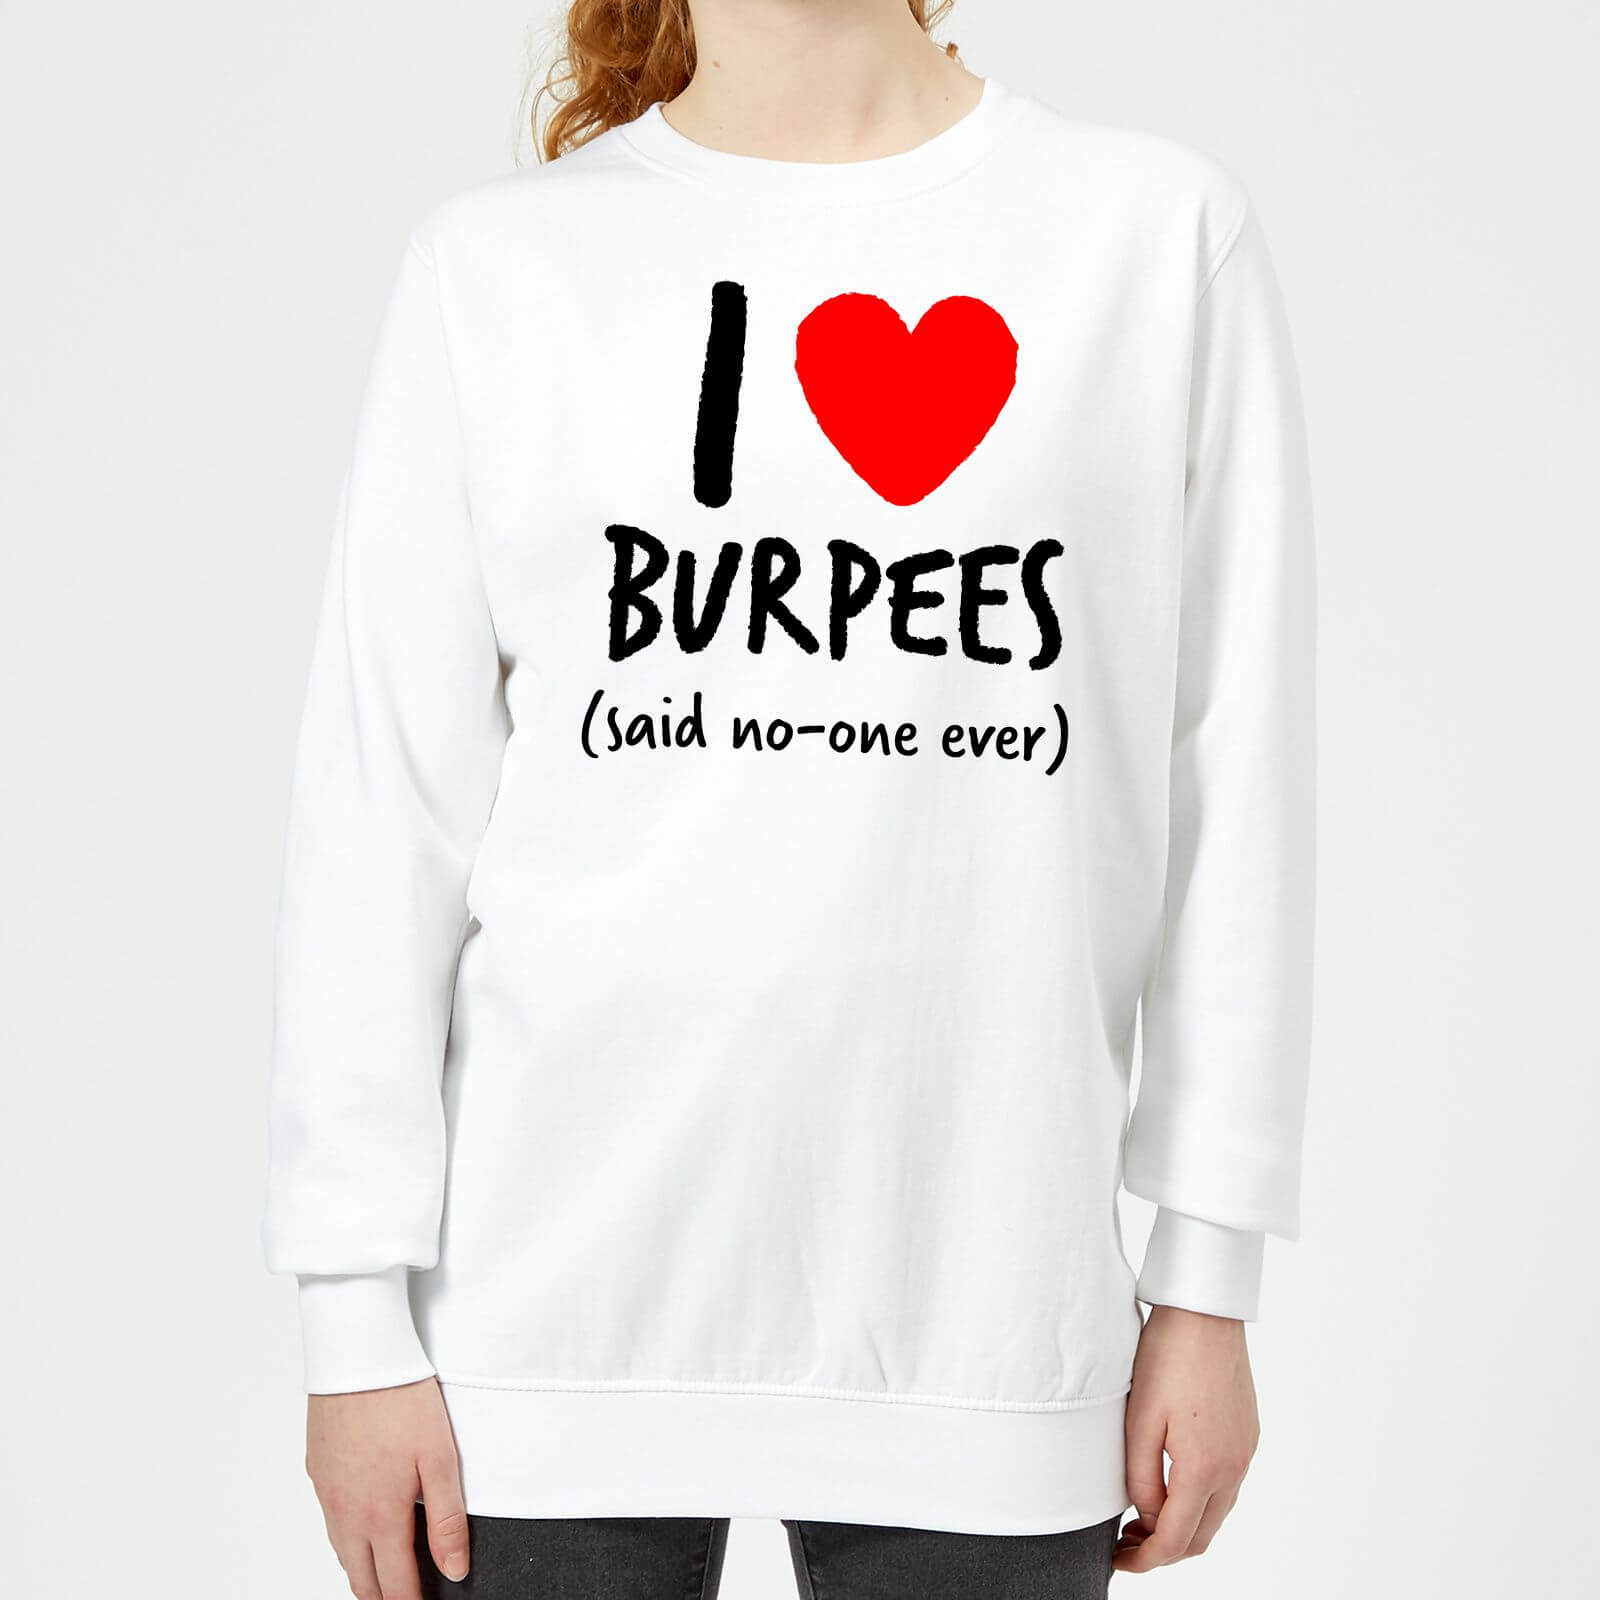 Fitness Range - I love burpees women's sweatshirt - white - m - white